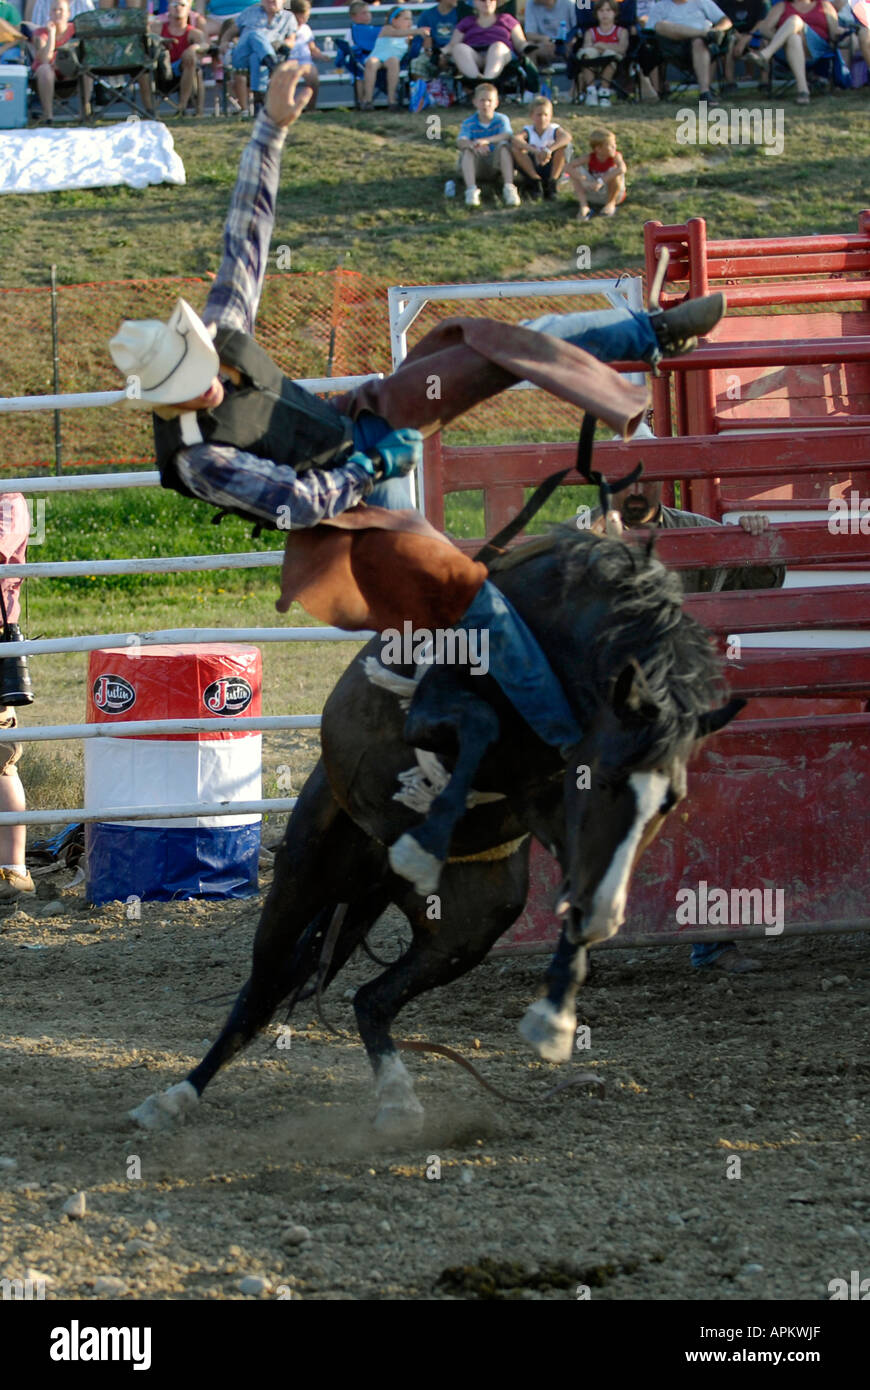 Cowboys teilnehmen im Rodeo Horse Riding-event Stockfoto